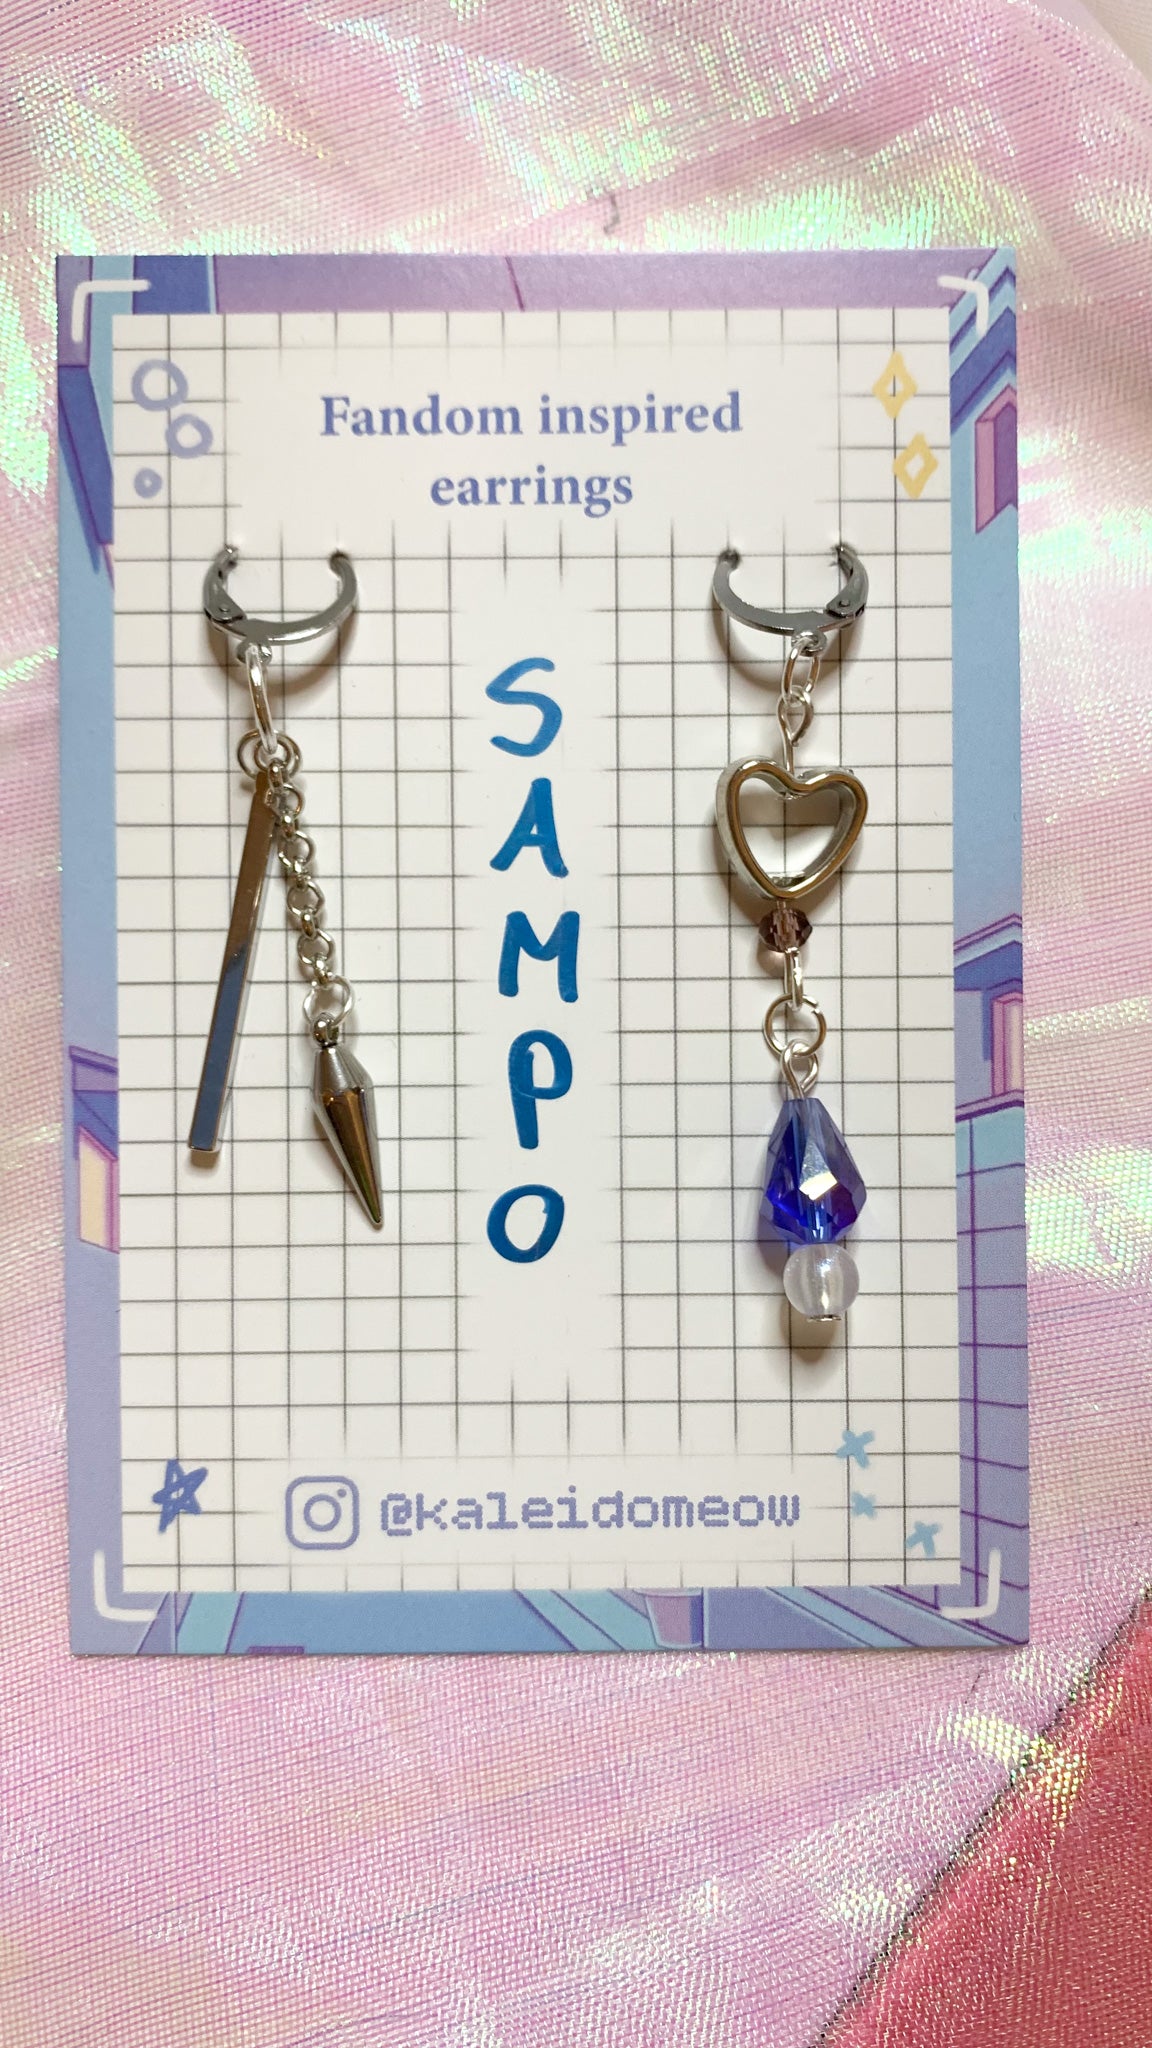 Sampo - Honkai Star Rail inspired earrings